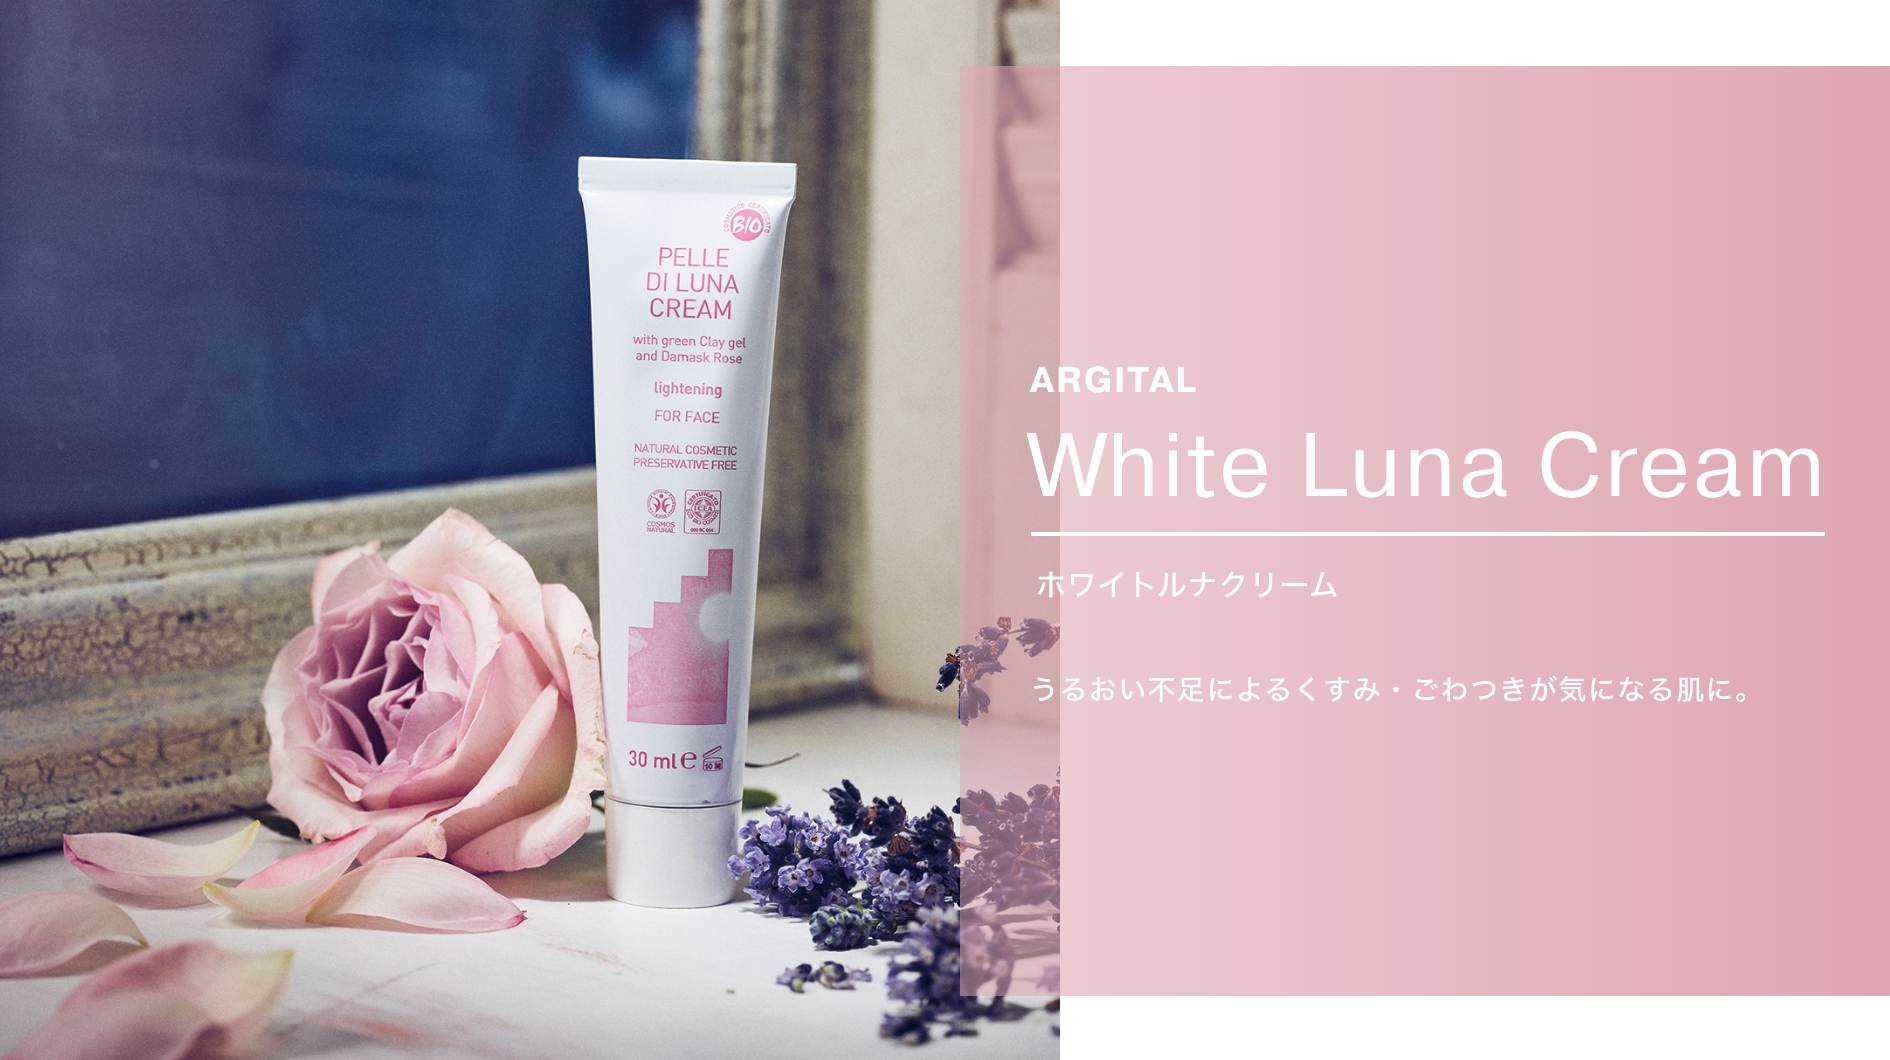 Argital White Luna Cream